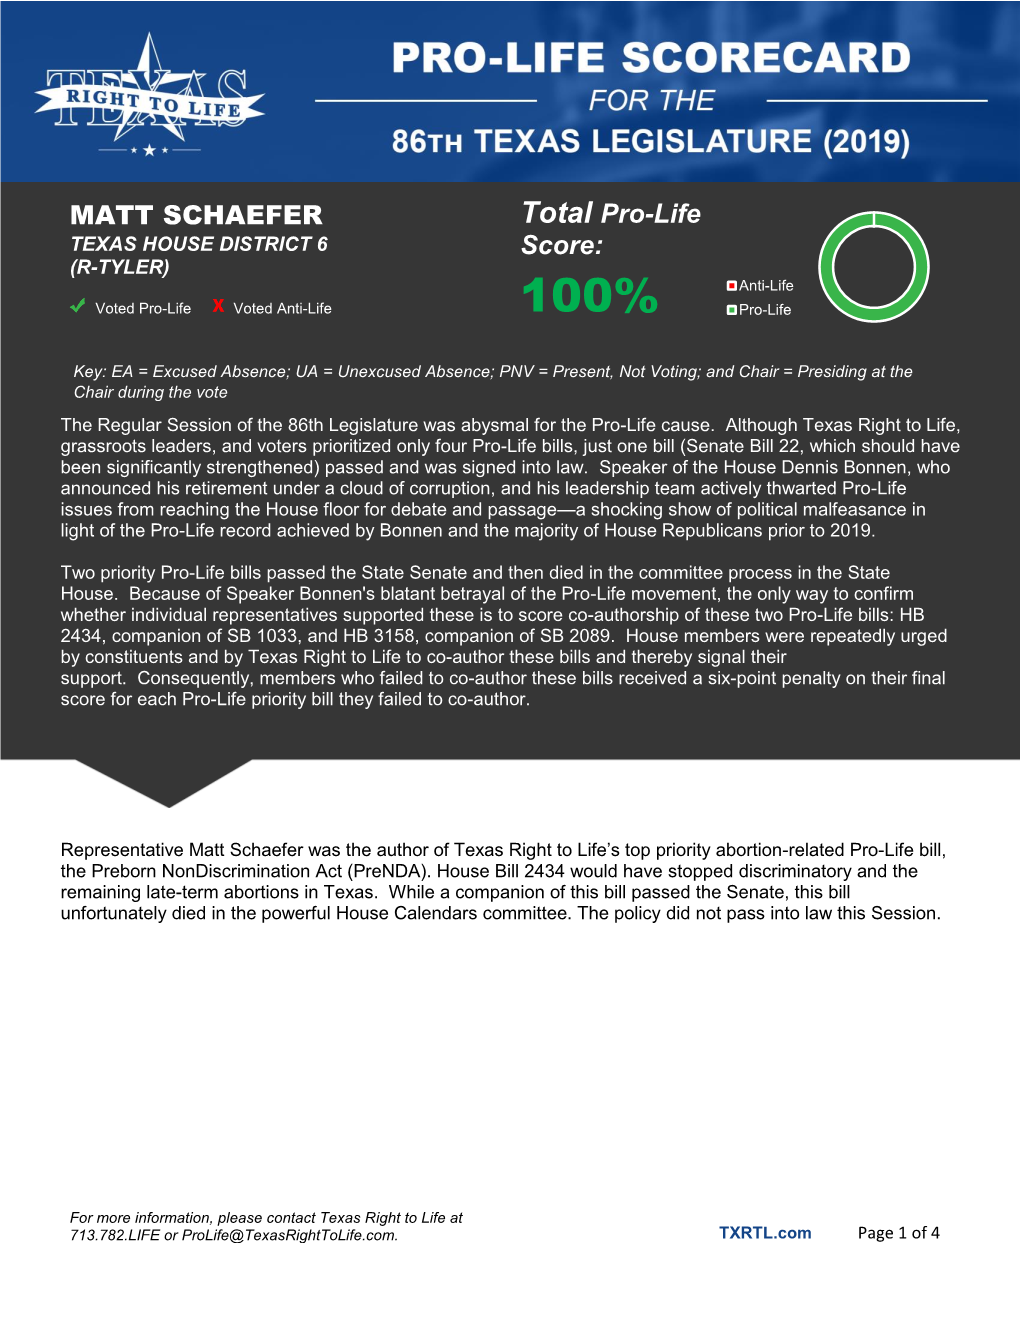 MATT SCHAEFER Total Pro-Life Score